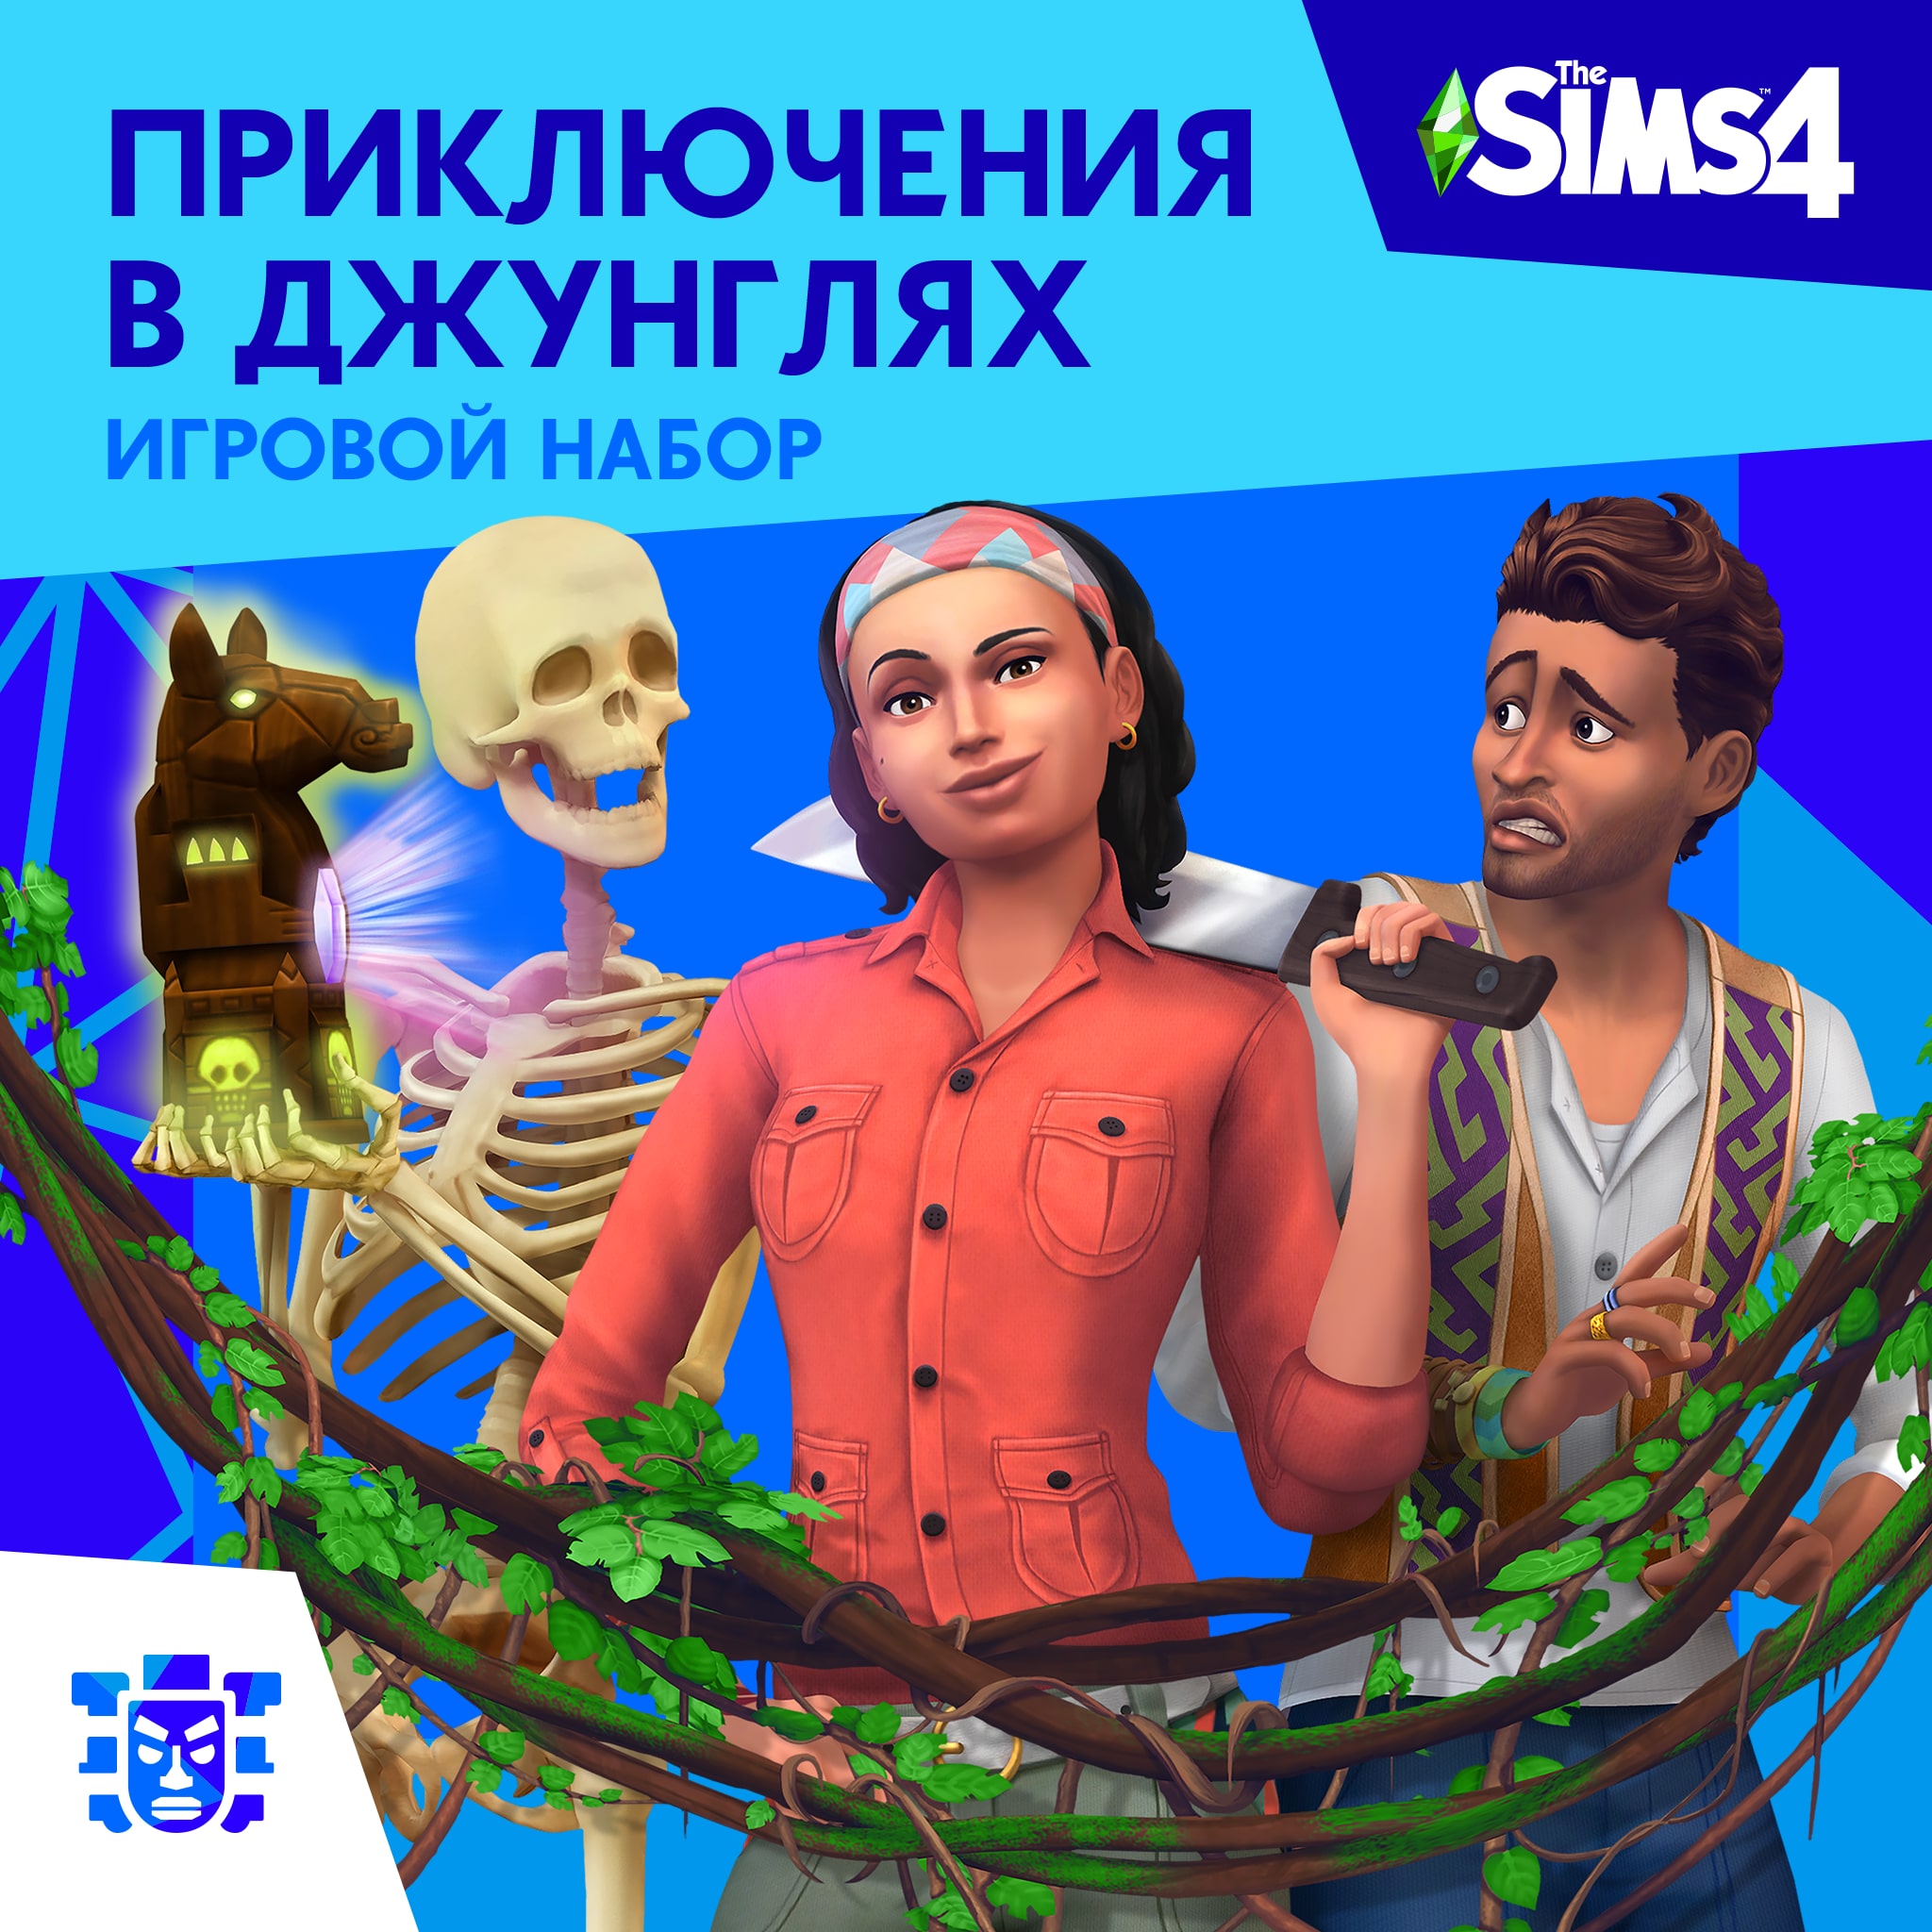 The Sims™ 4 Приключения в джунглях